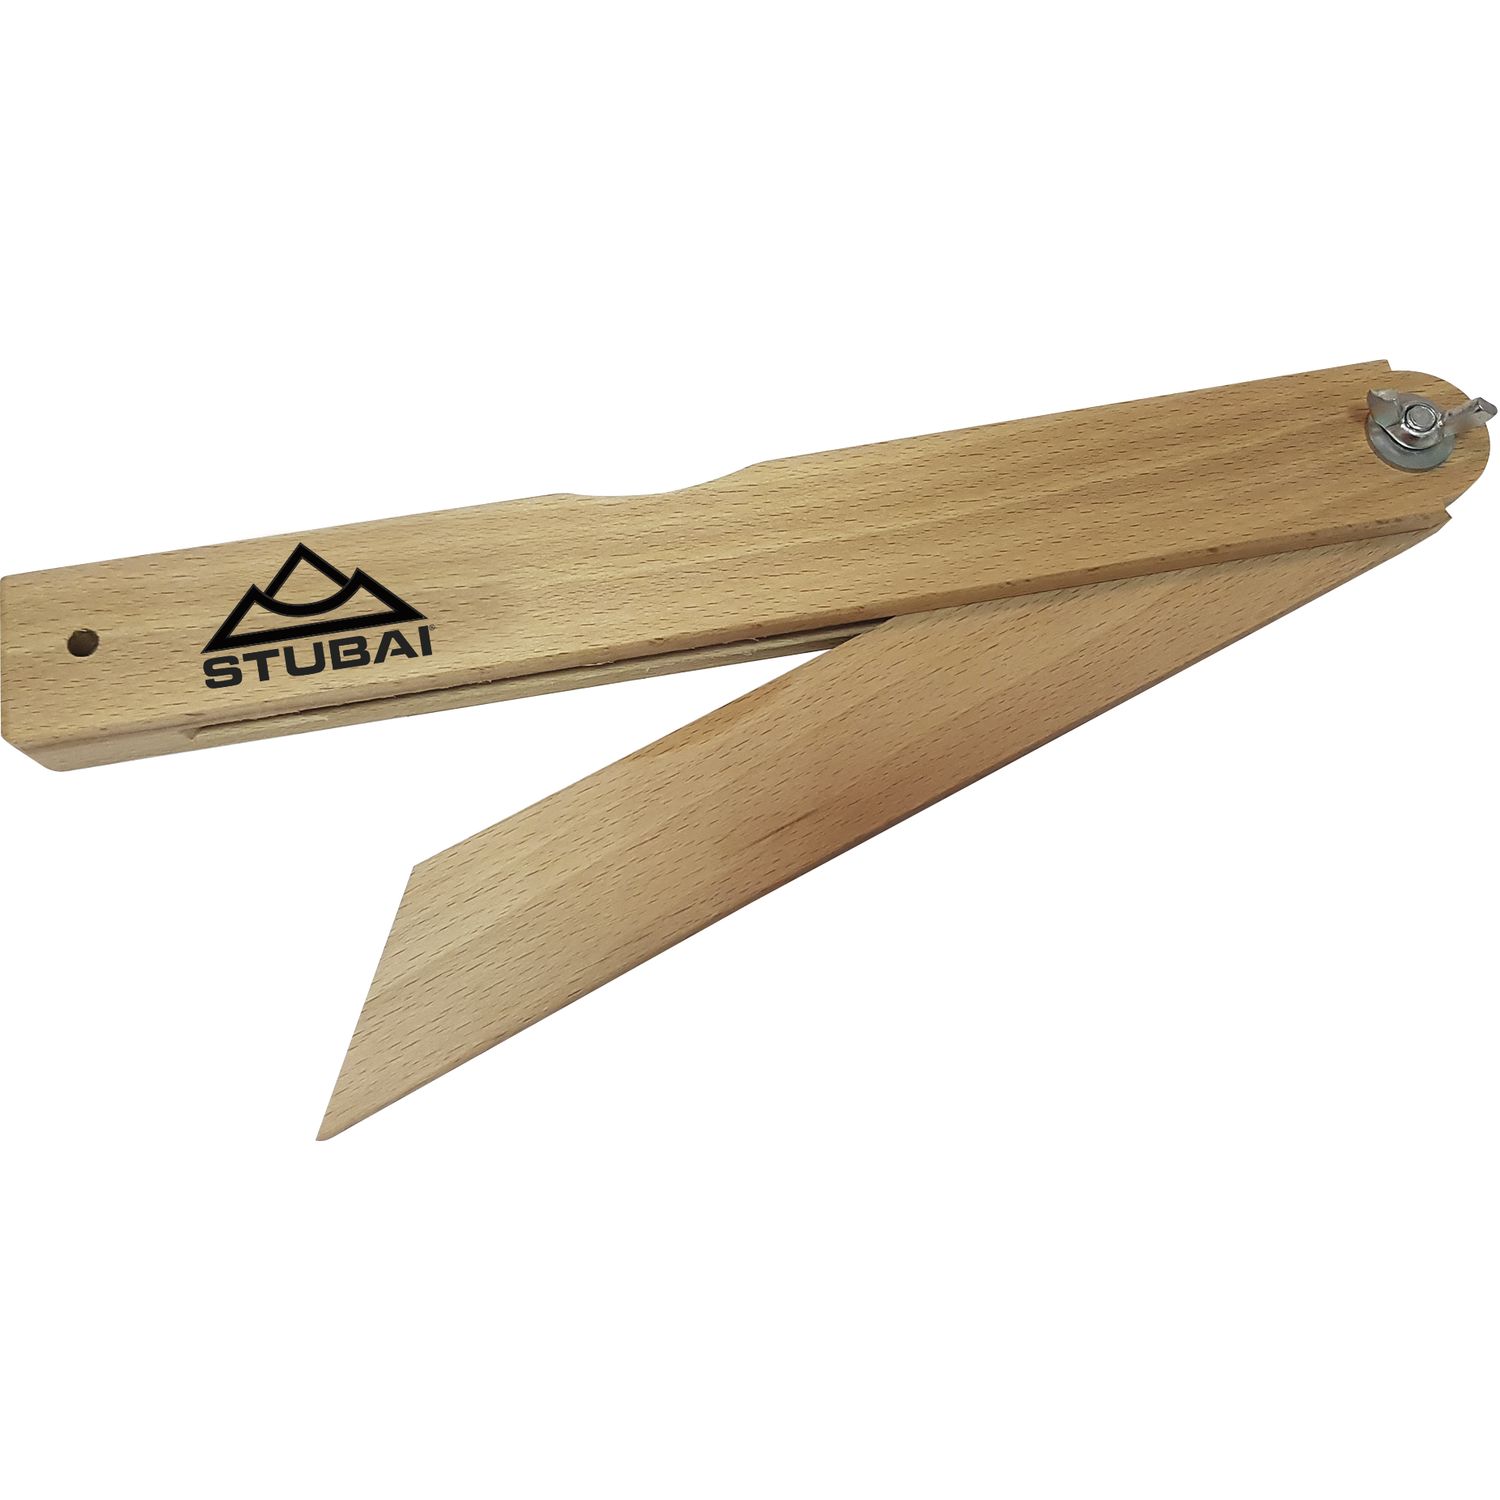 STUBAI falsa squadra legno regolabile lunghezza 300 mm, larghezza 33 mm